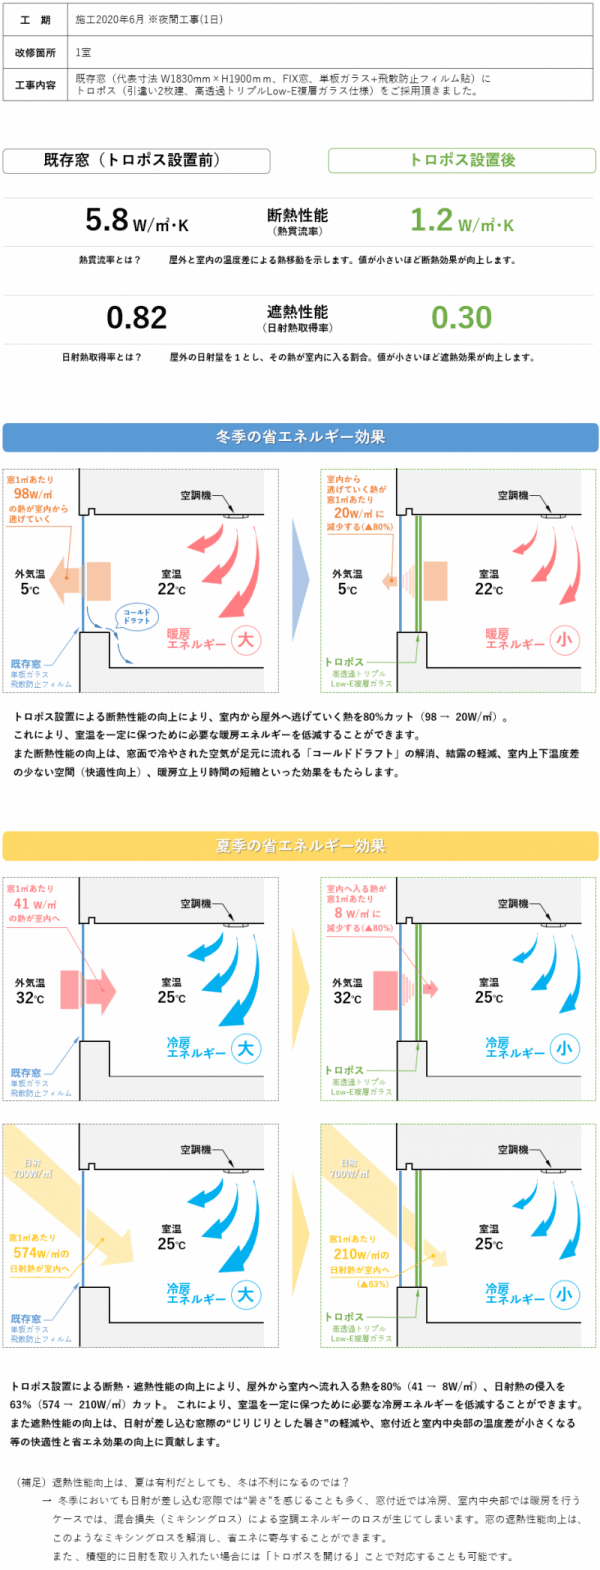 新大阪某オフィスビル断熱・遮熱性能データ